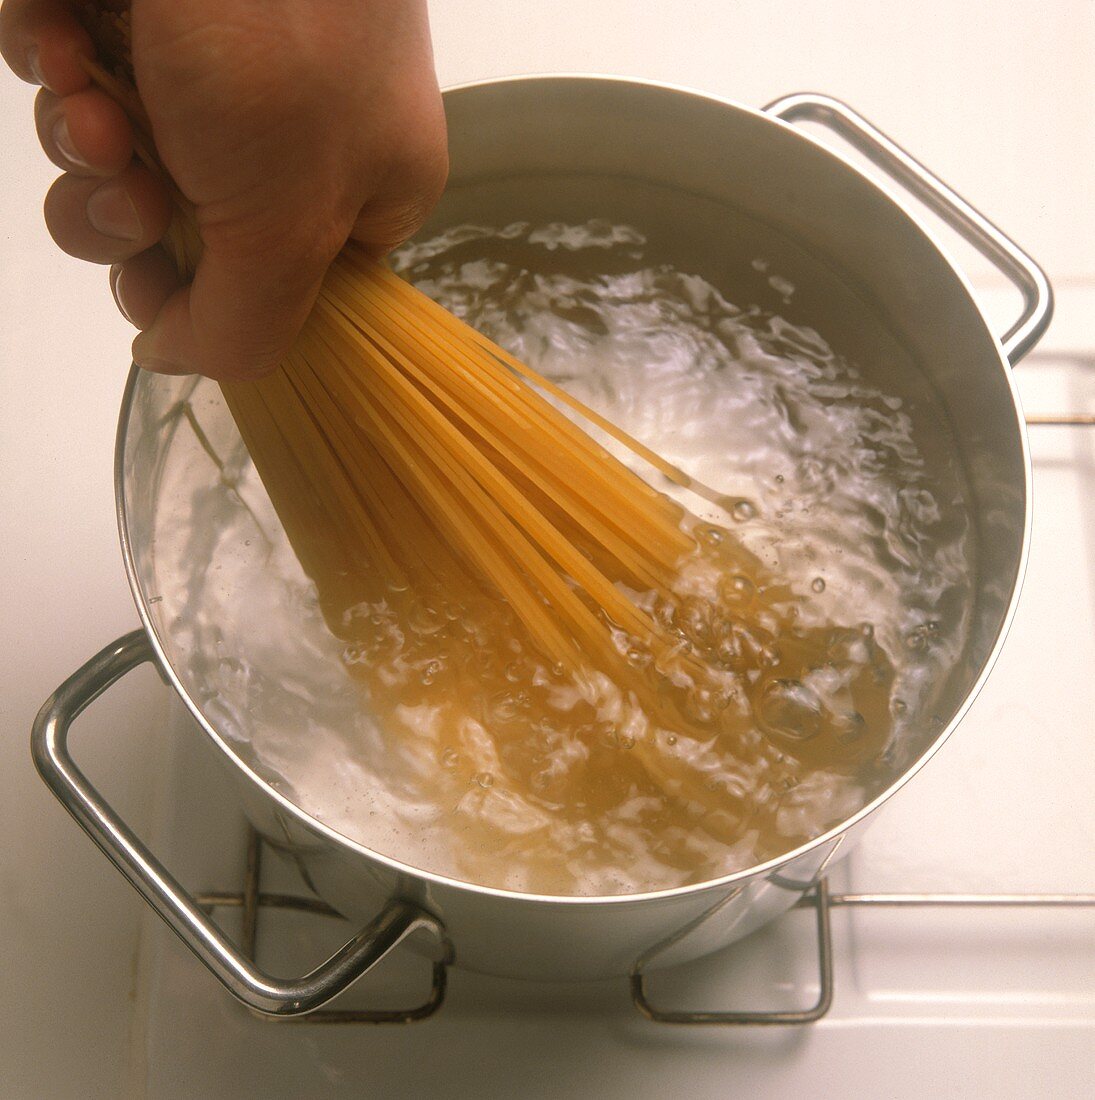 Cooking spaghetti